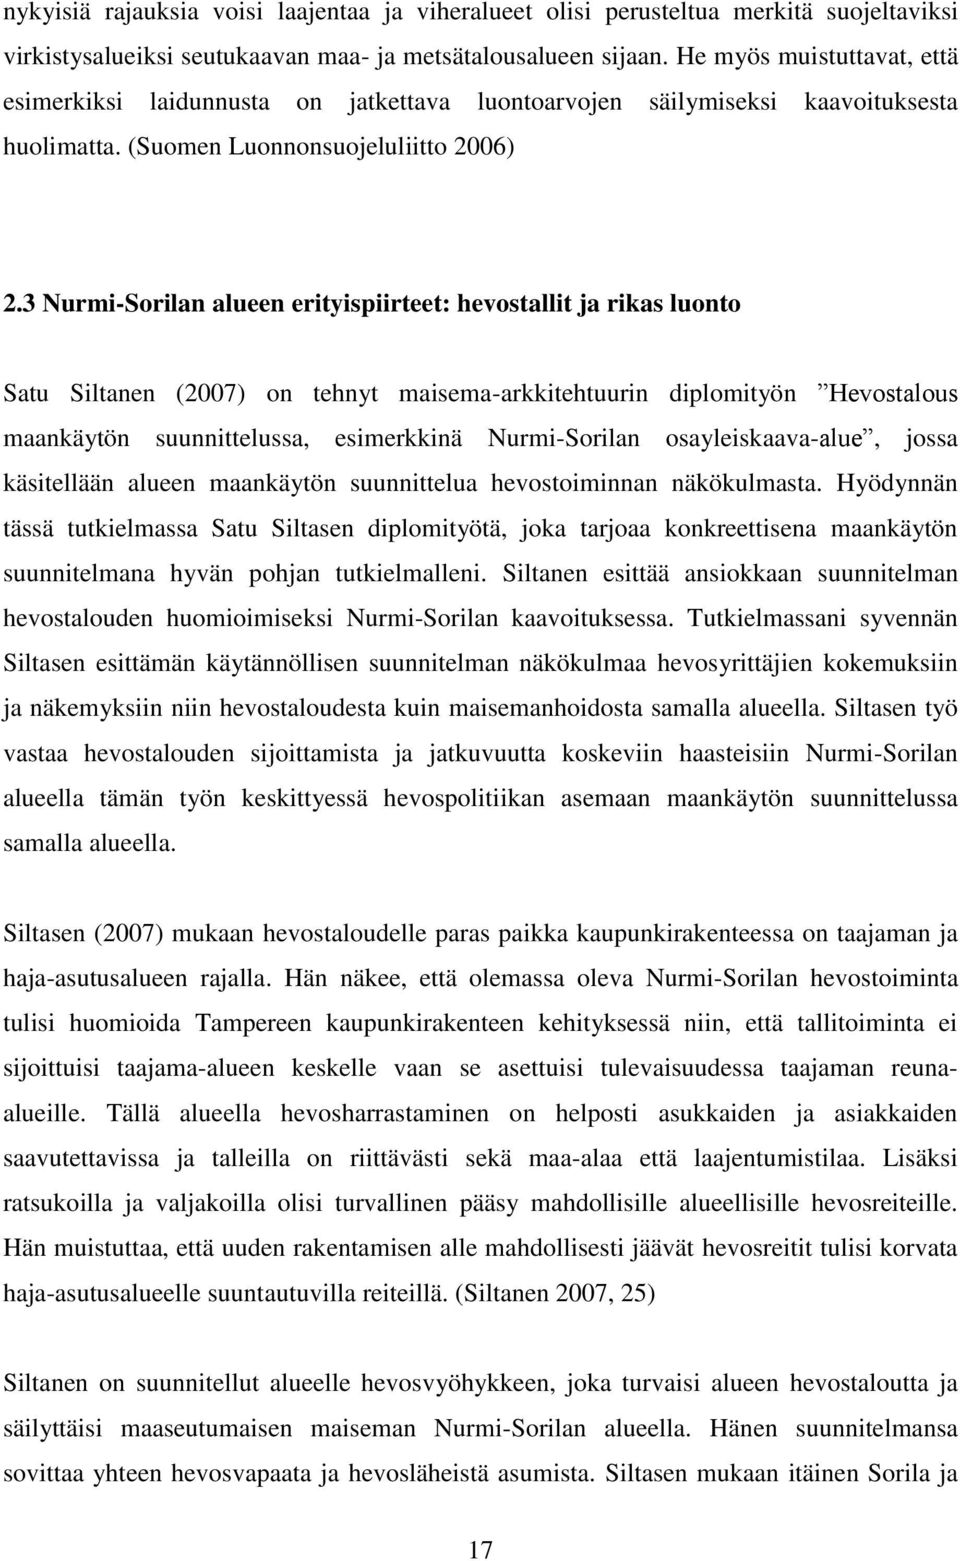 3 Nurmi-Sorilan alueen erityispiirteet: hevostallit ja rikas luonto Satu Siltanen (2007) on tehnyt maisema-arkkitehtuurin diplomityön Hevostalous maankäytön suunnittelussa, esimerkkinä Nurmi-Sorilan